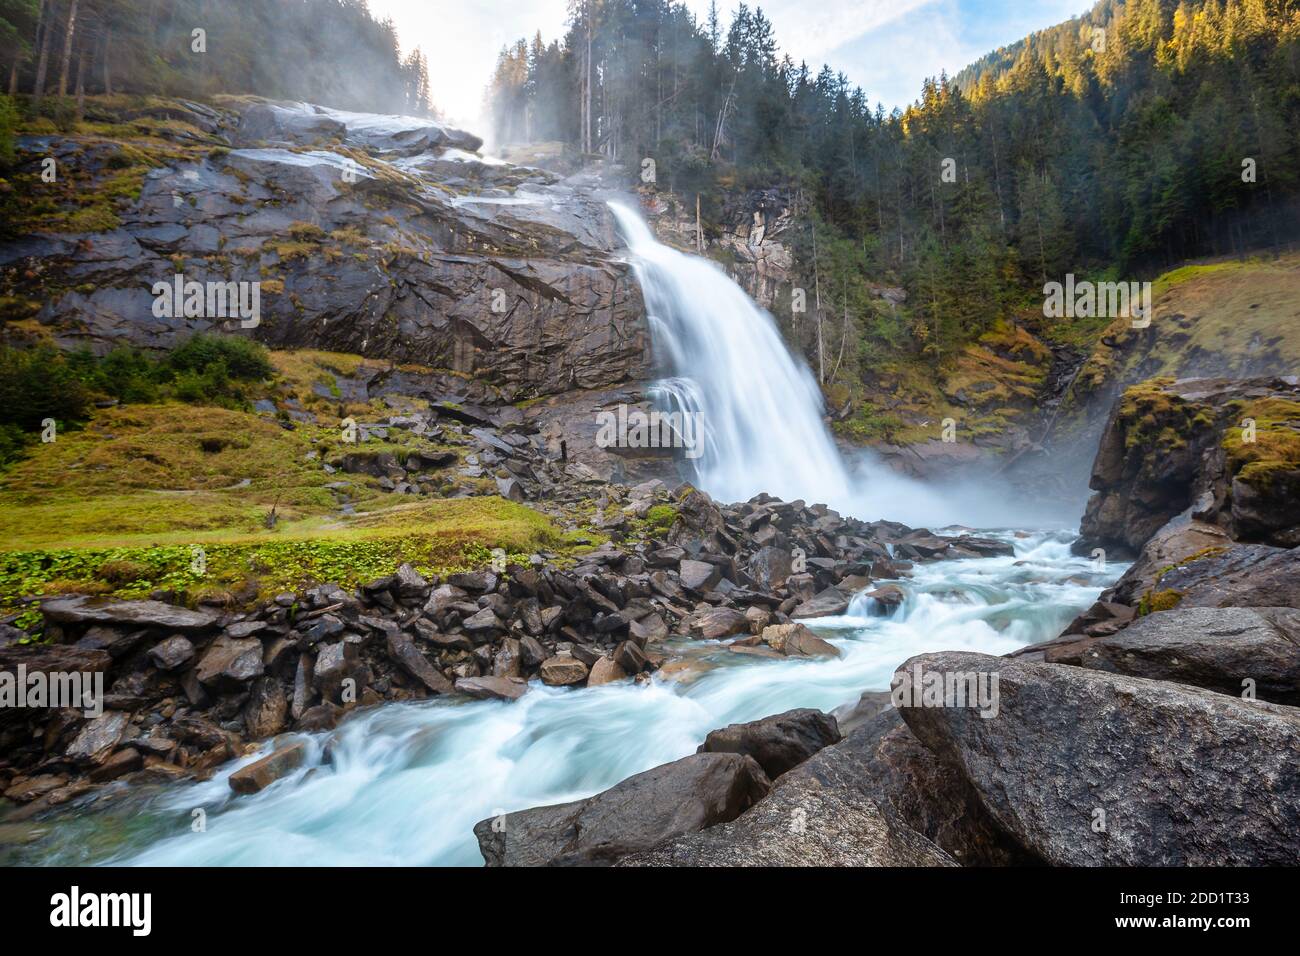 Le cascate di Krimmler a Krimml, Austria, sono le più alte d'Europa Foto  stock - Alamy